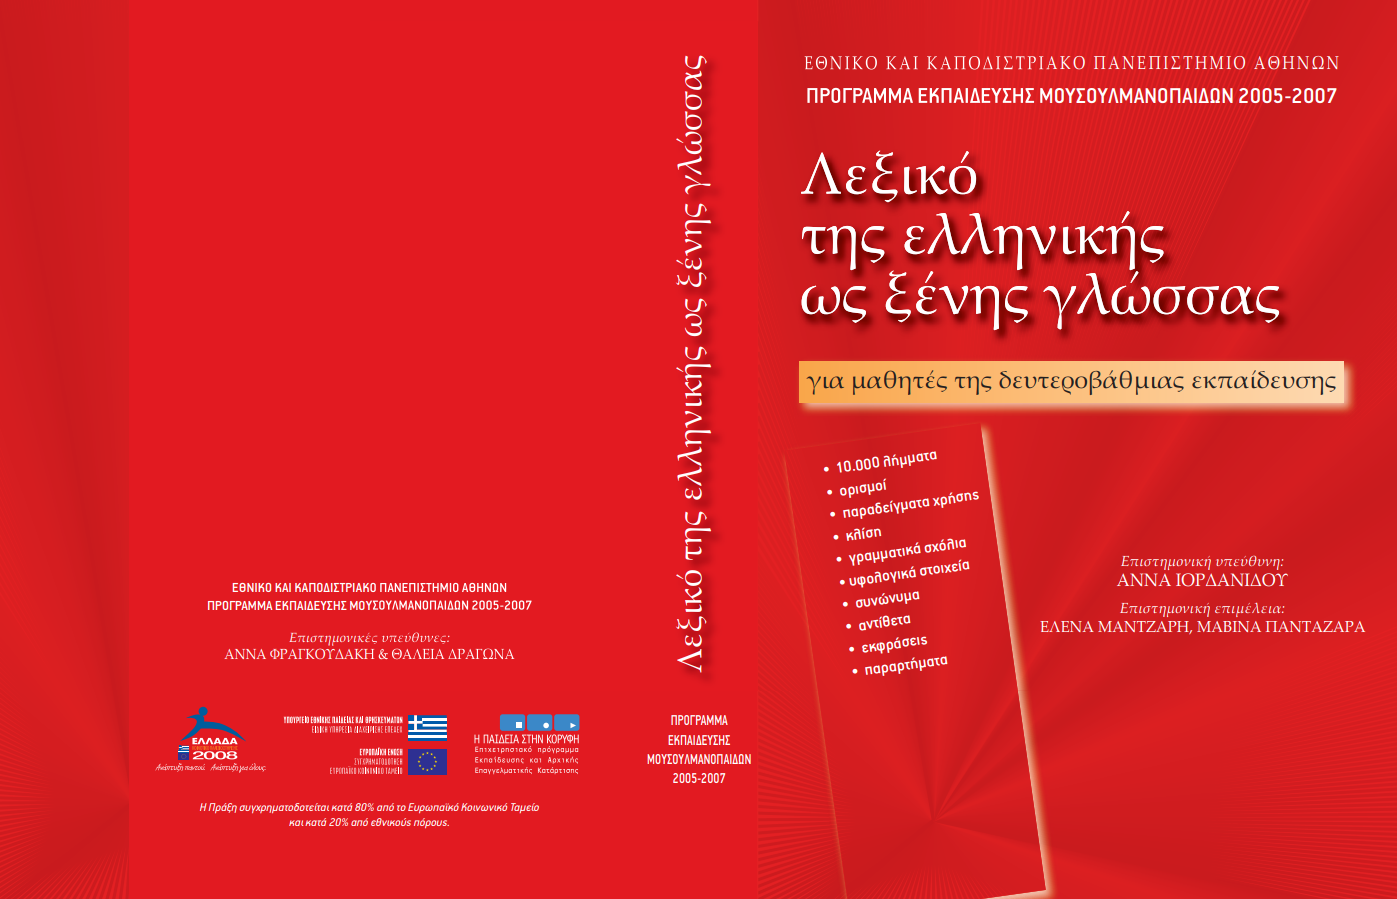 Κατεβάστε δωρεάν: Λεξικό της ελληνικής ως ξένης γλώσσας (PDF)